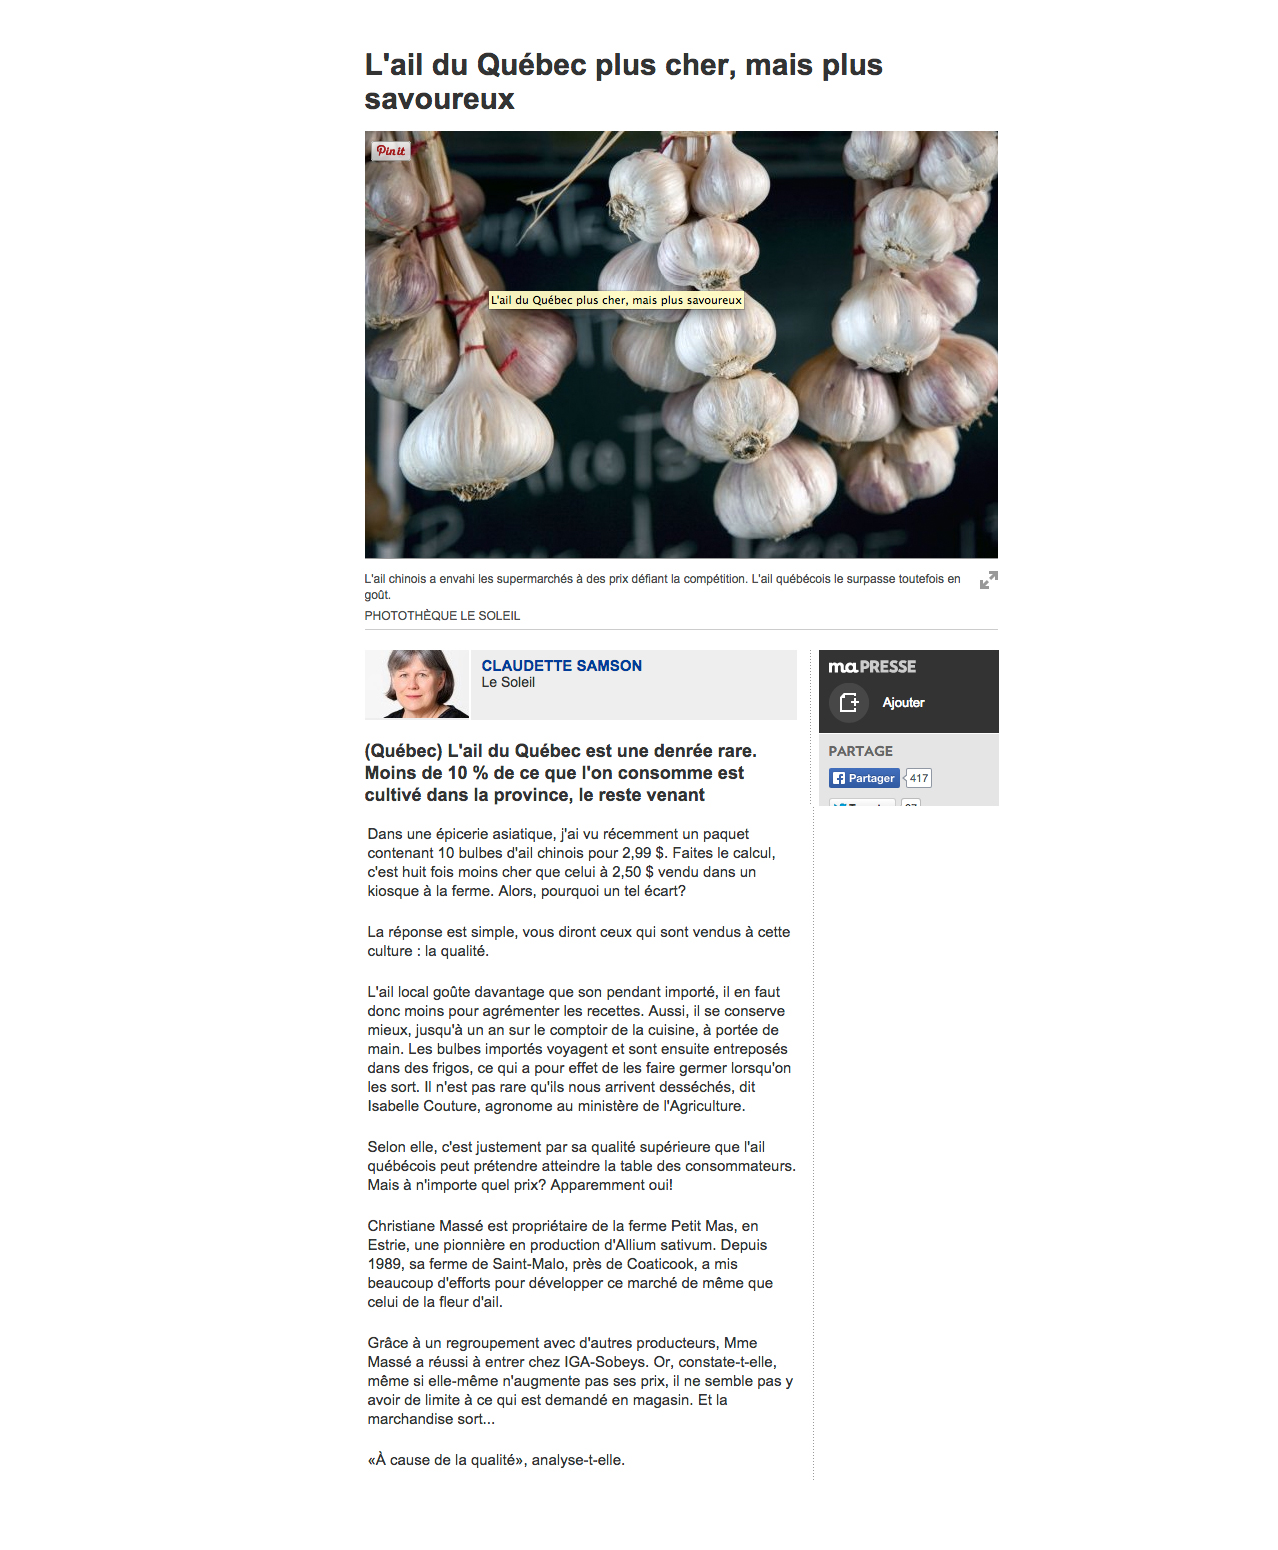 Le Petit Mas -They talk abour our garlic flowers (scapes) - La presse